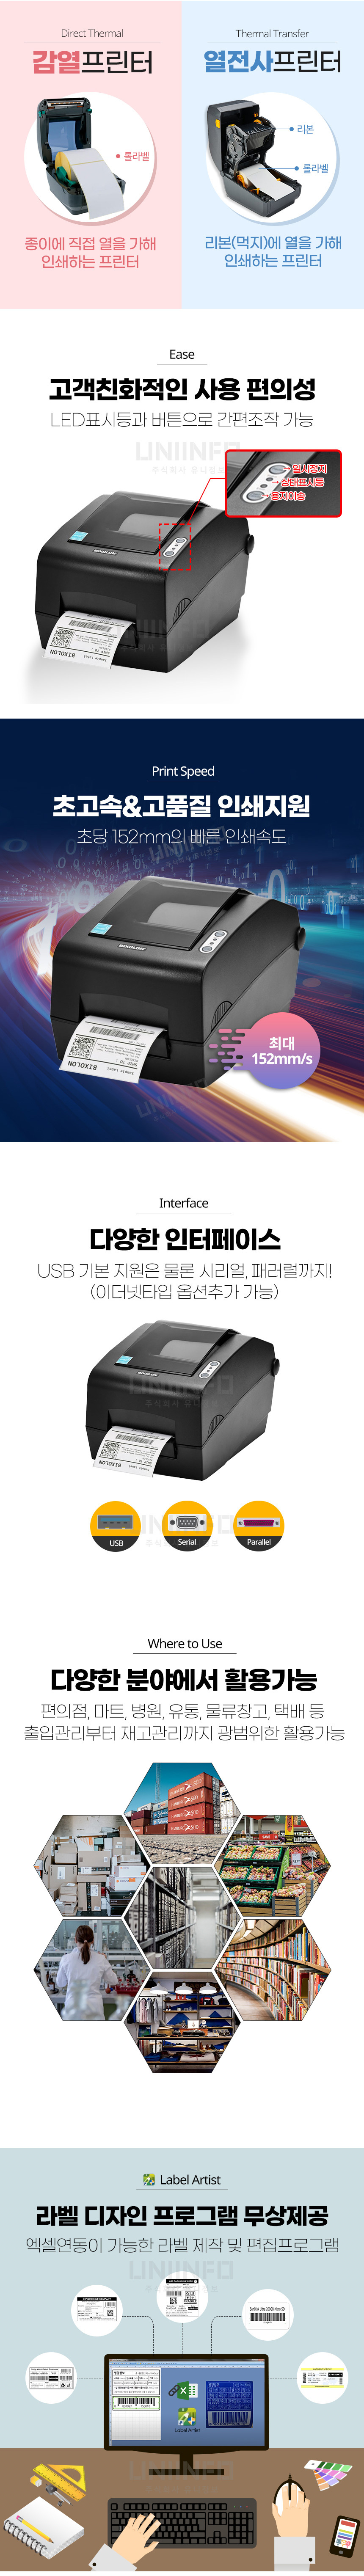 감열프린터 열전사프린터 led표시등과 버튼으로 간편조작 가능 초고속 고품질 인쇄지원 초당152mm의 빠른 인쇄속도